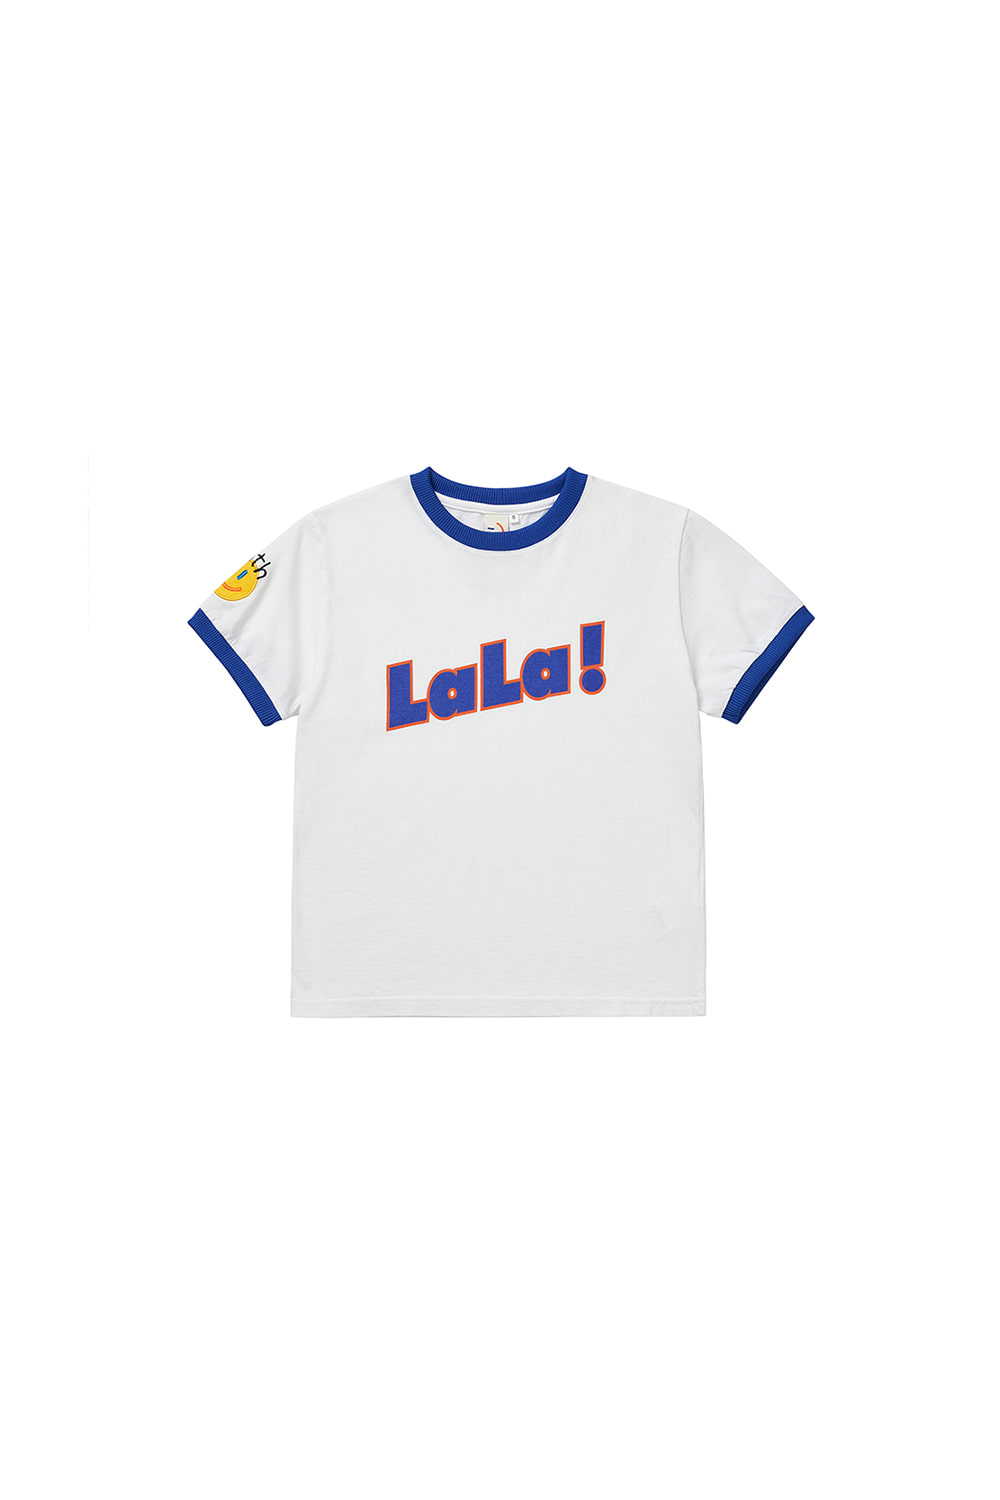 LaLa Kids Twotone T-shirt [Blue]